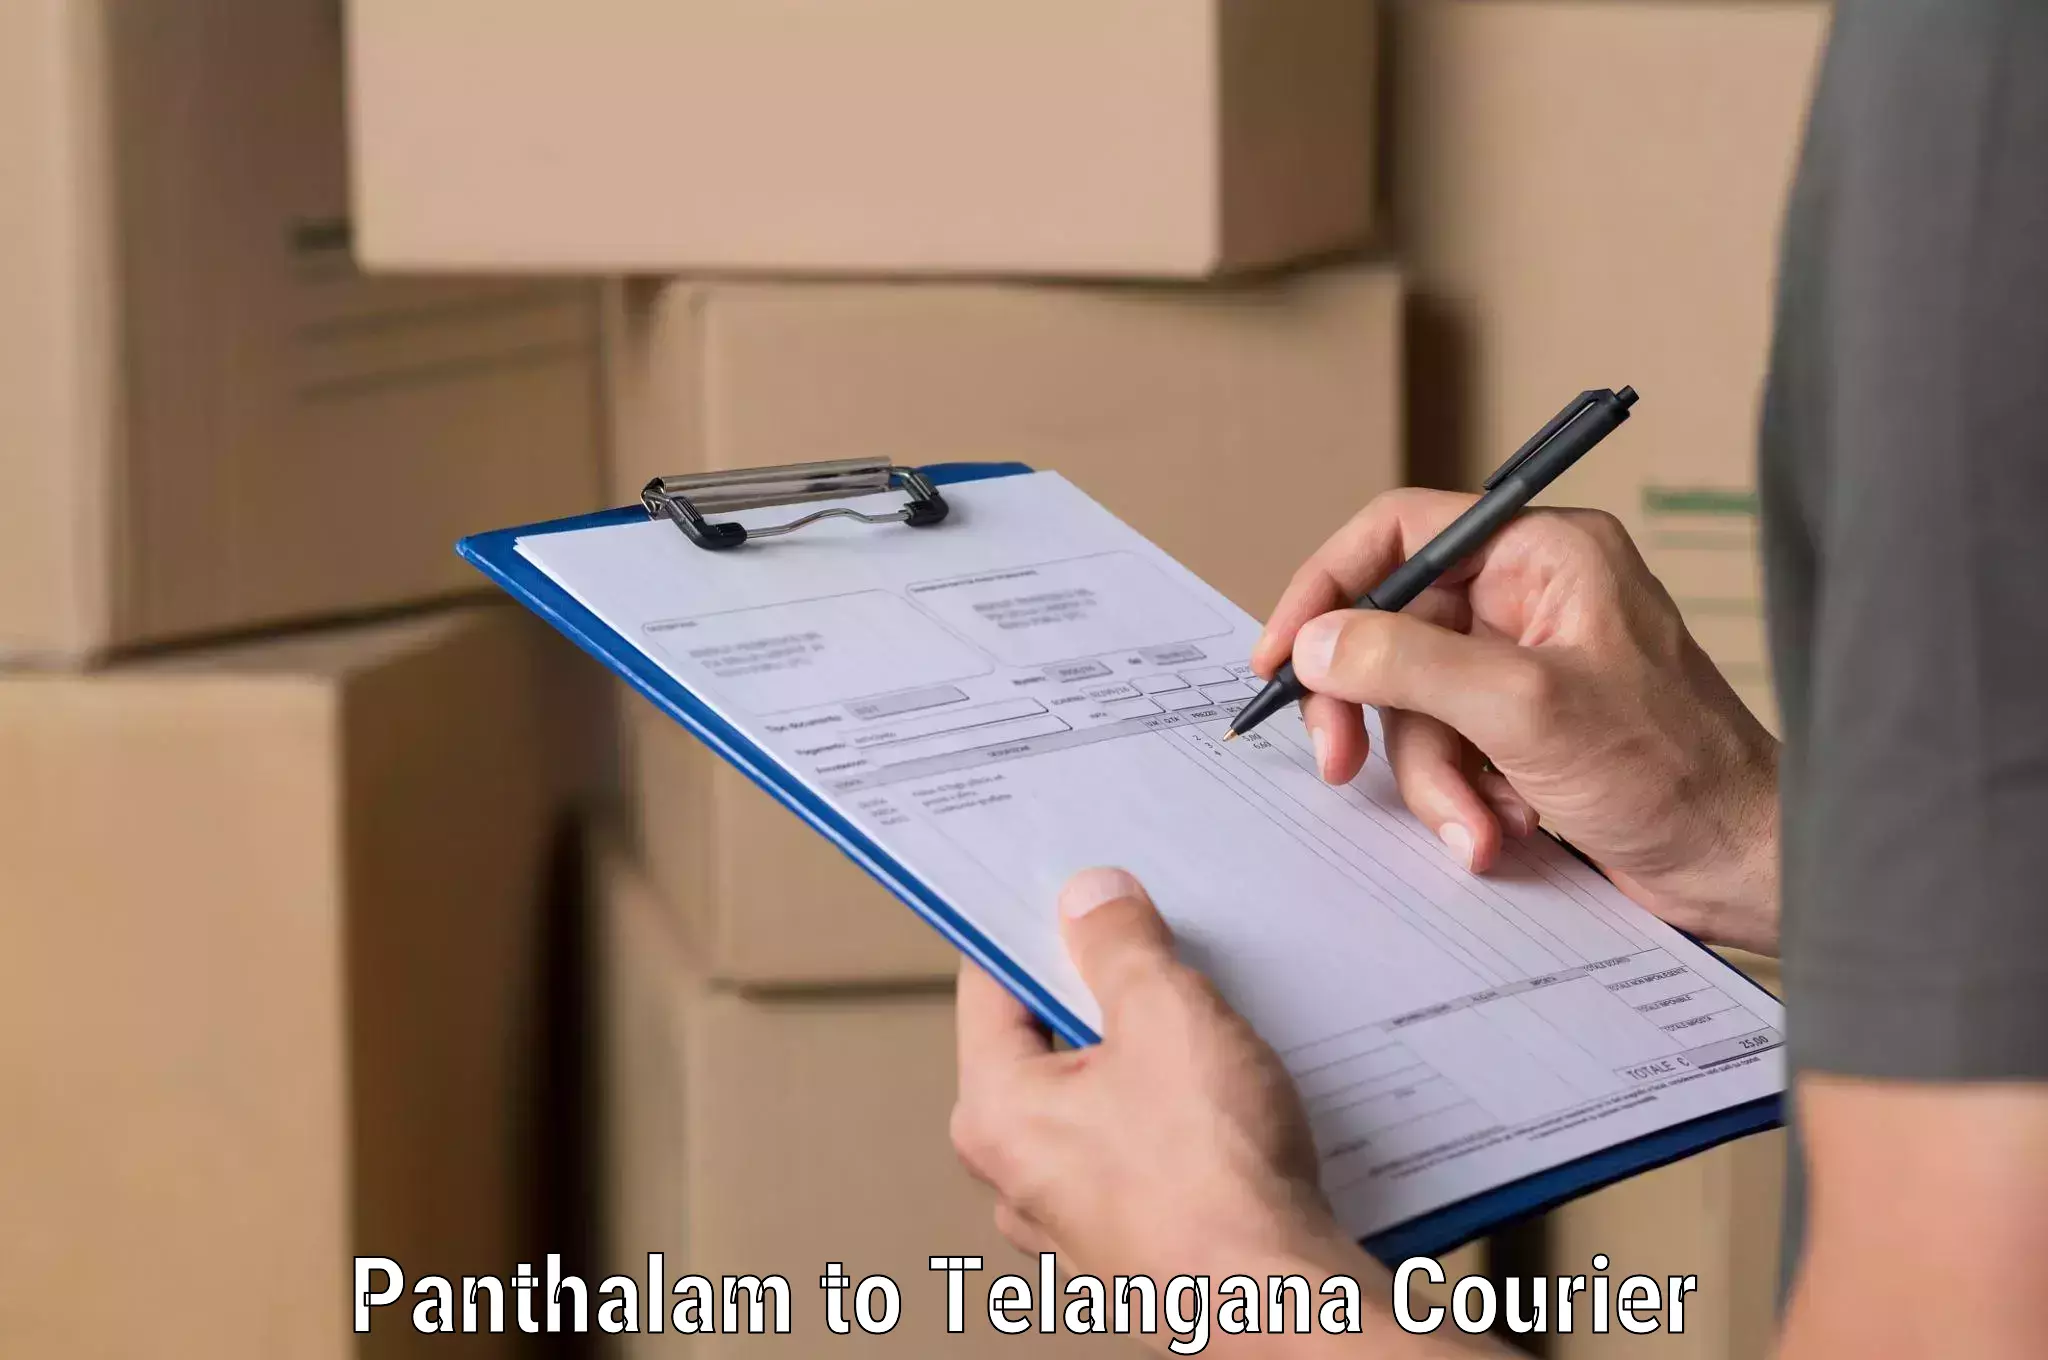 Expedited parcel delivery in Panthalam to Karimnagar